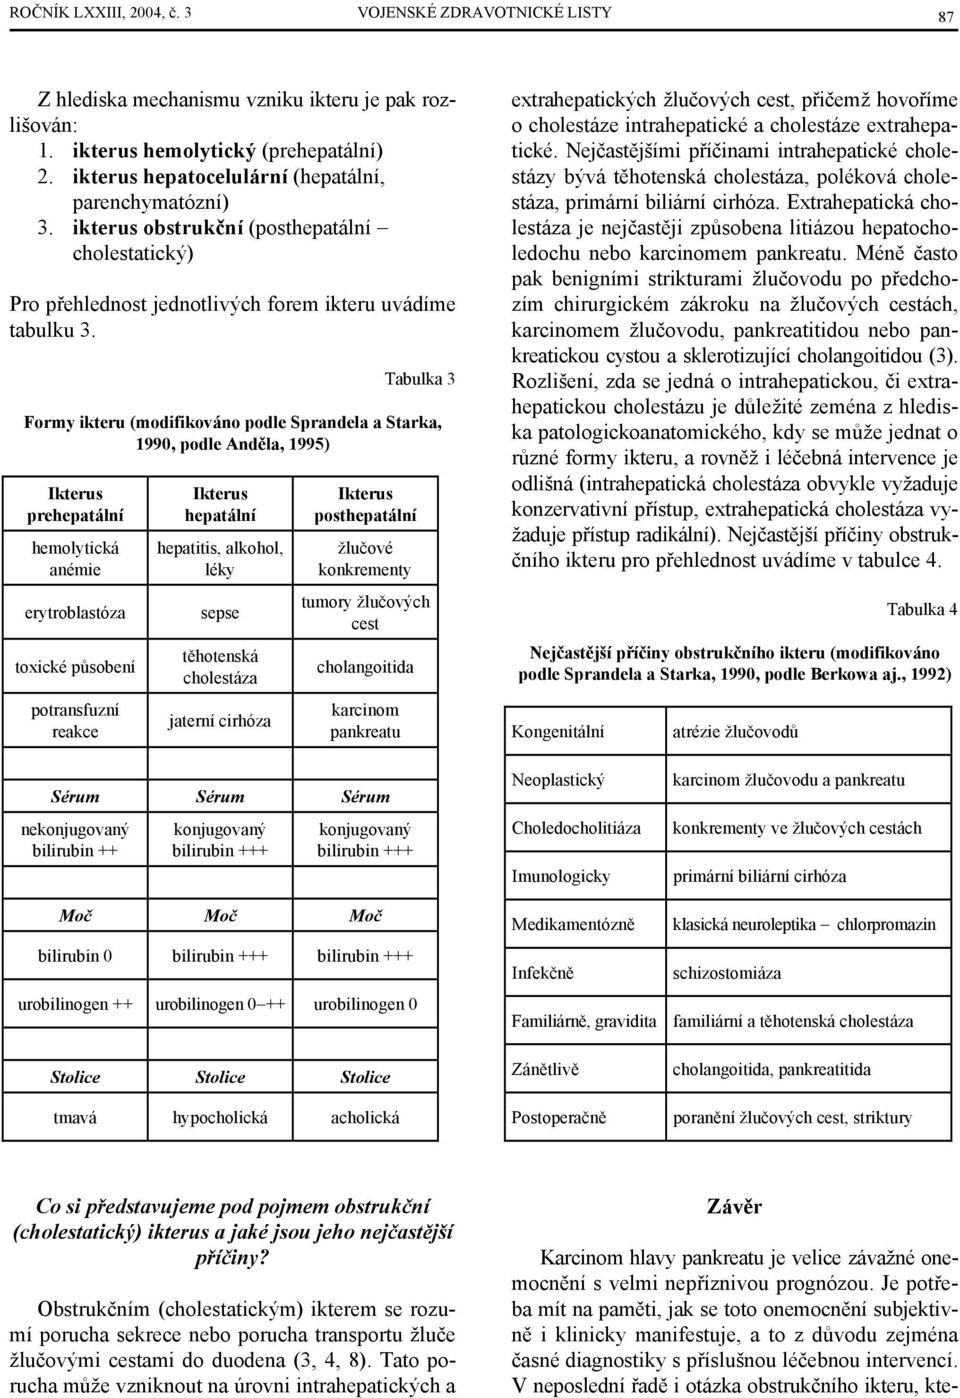 Tabulka 3 Formy ikteru (modifikováno podle Sprandela a Starka, 1990, podle Anděla, 1995) Ikterus prehepatální hemolytická anémie erytroblastóza toxické působení potransfuzní reakce Ikterus hepatální